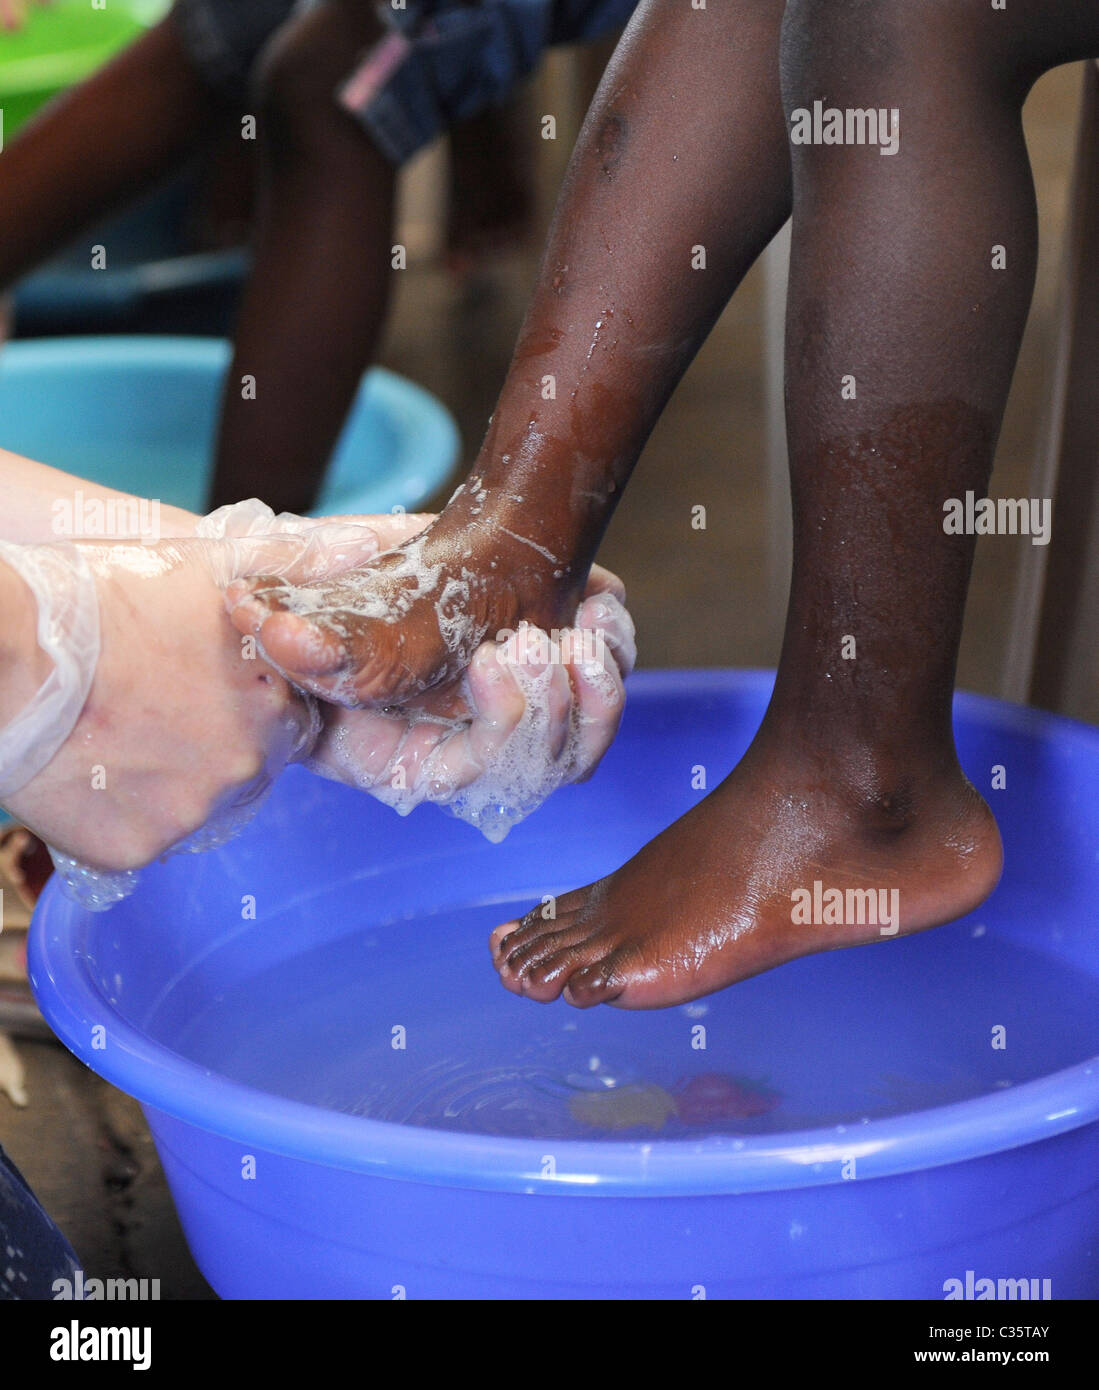 KINGSTON, Jamaica un marinaio bagna un bambino i piedi prima di dare a lui un nuovo paio di scarpe durante la promessa continua scarpa give-away Foto Stock